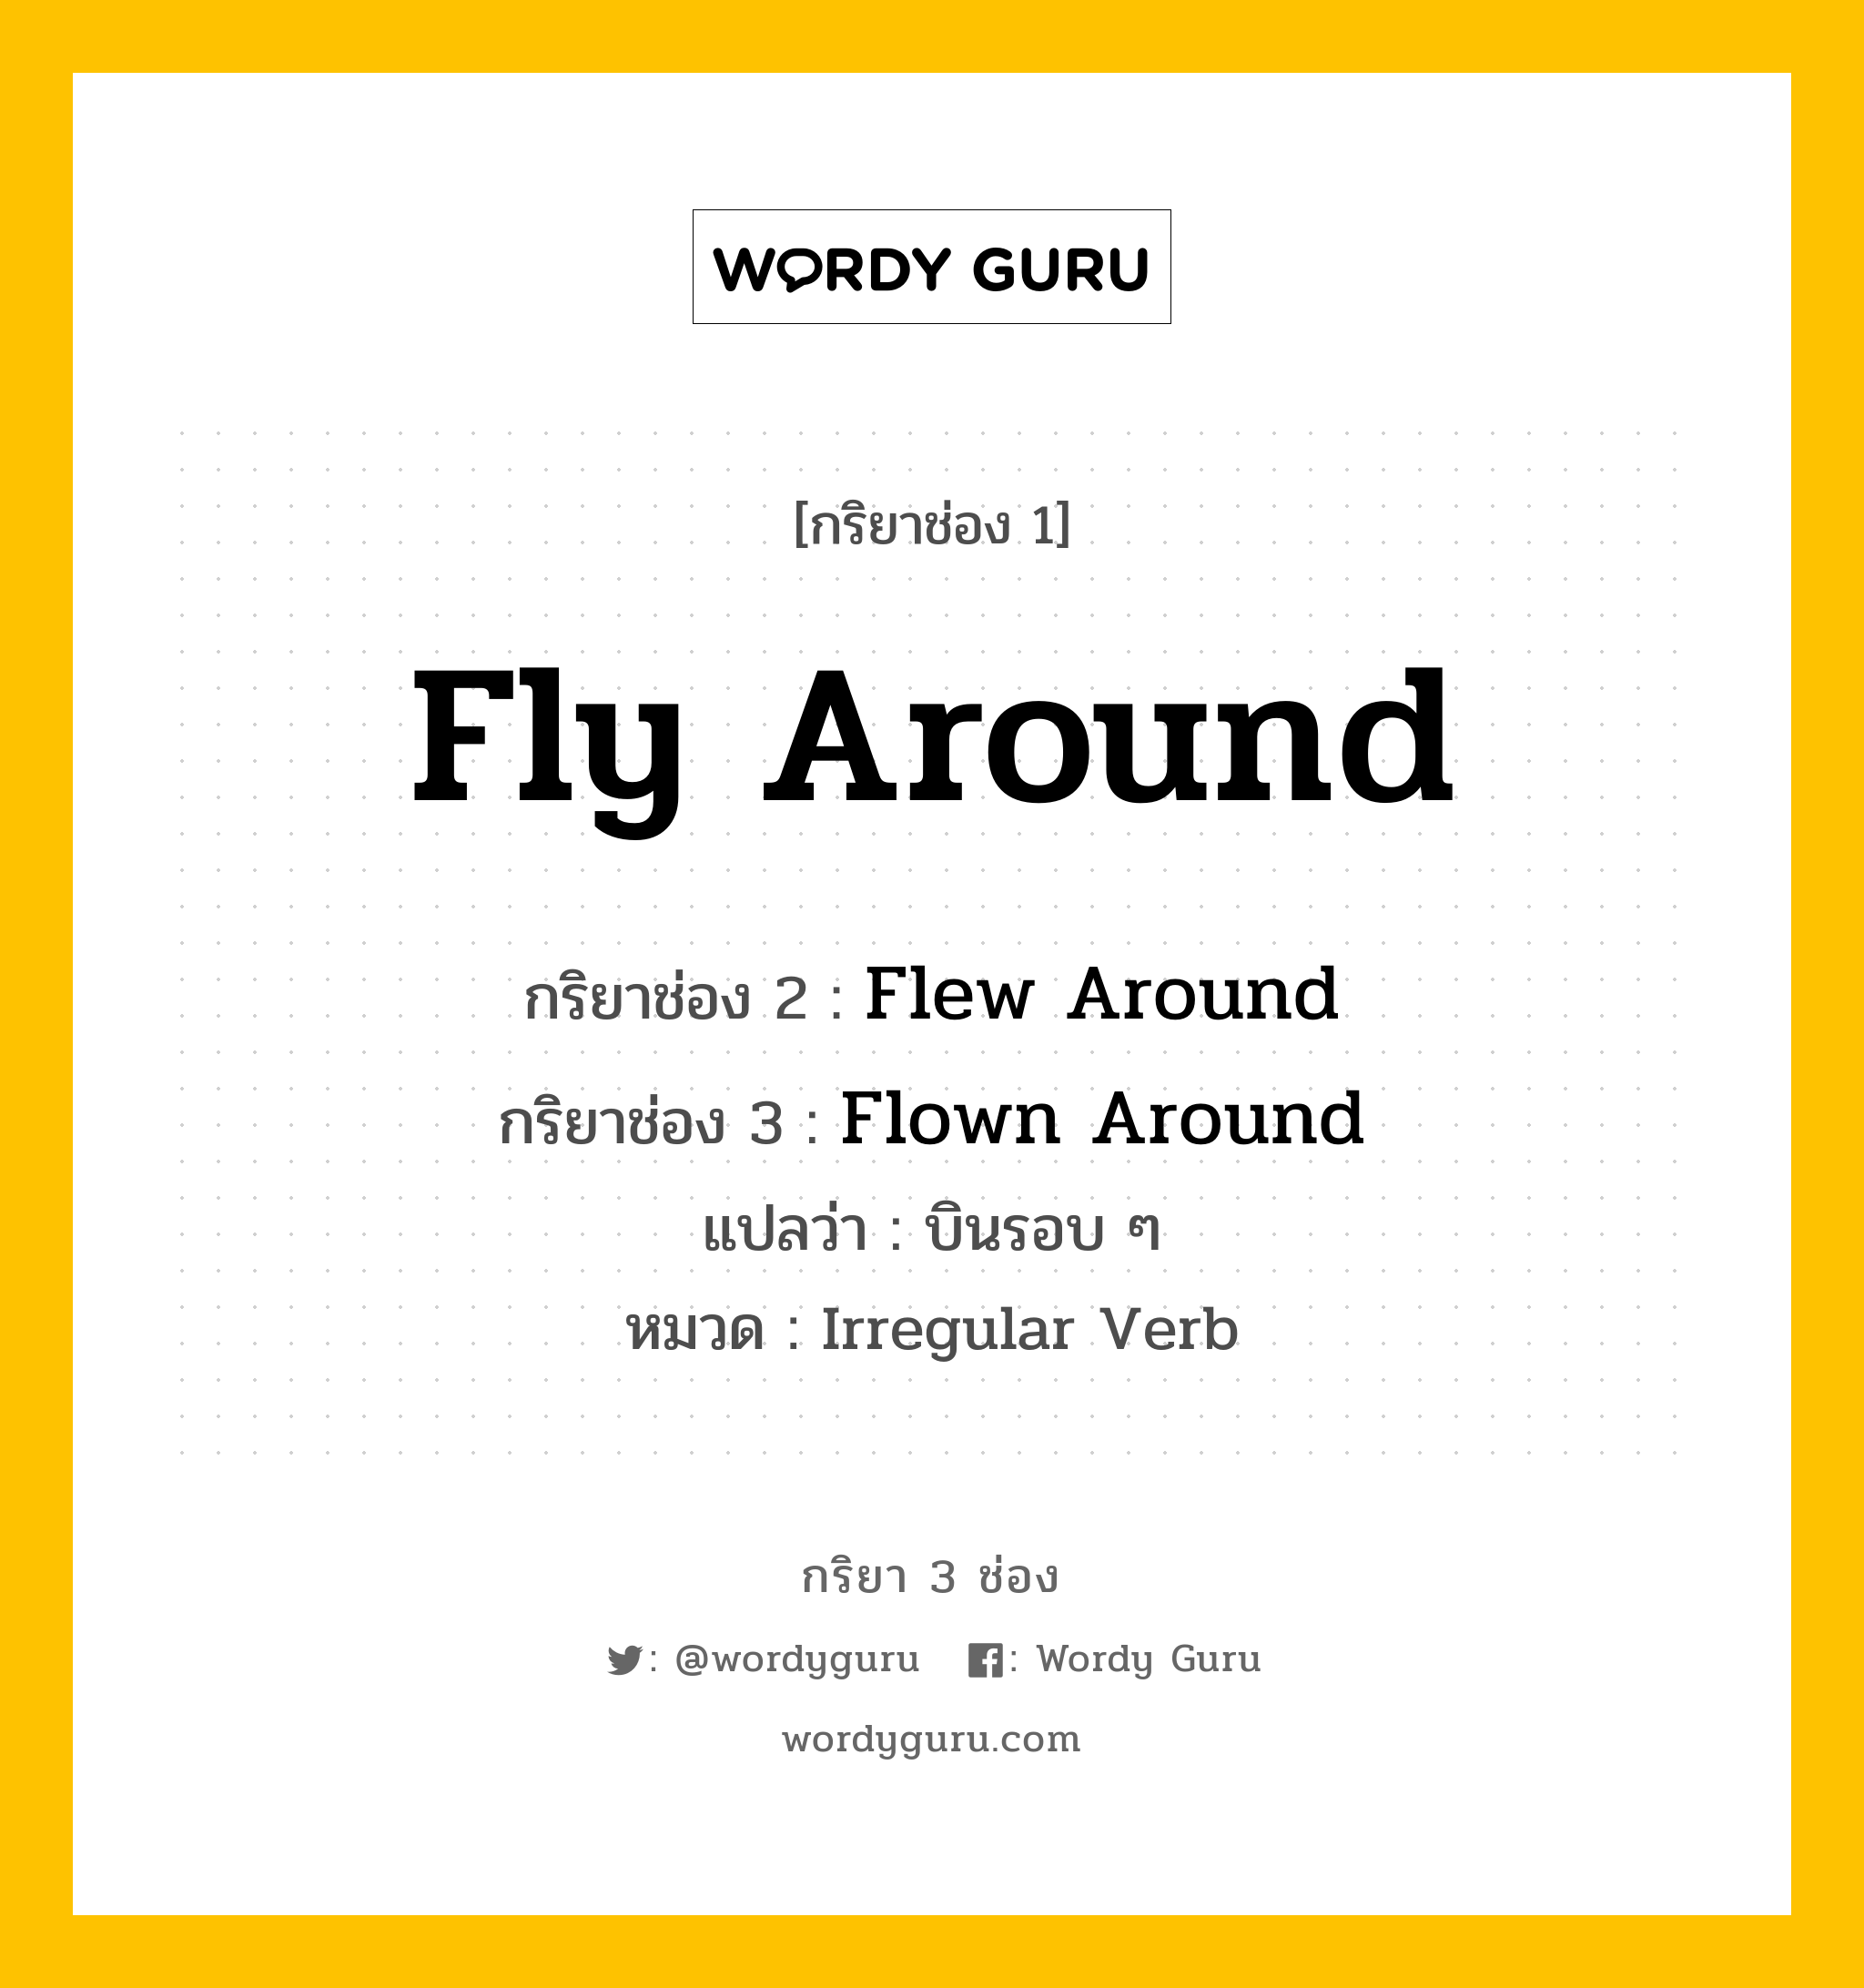 Fly Around มีกริยา 3 ช่องอะไรบ้าง? คำศัพท์ในกลุ่มประเภท Irregular Verb, กริยาช่อง 1 Fly Around กริยาช่อง 2 Flew Around กริยาช่อง 3 Flown Around แปลว่า บินรอบ ๆ หมวด Irregular Verb หมวด Irregular Verb